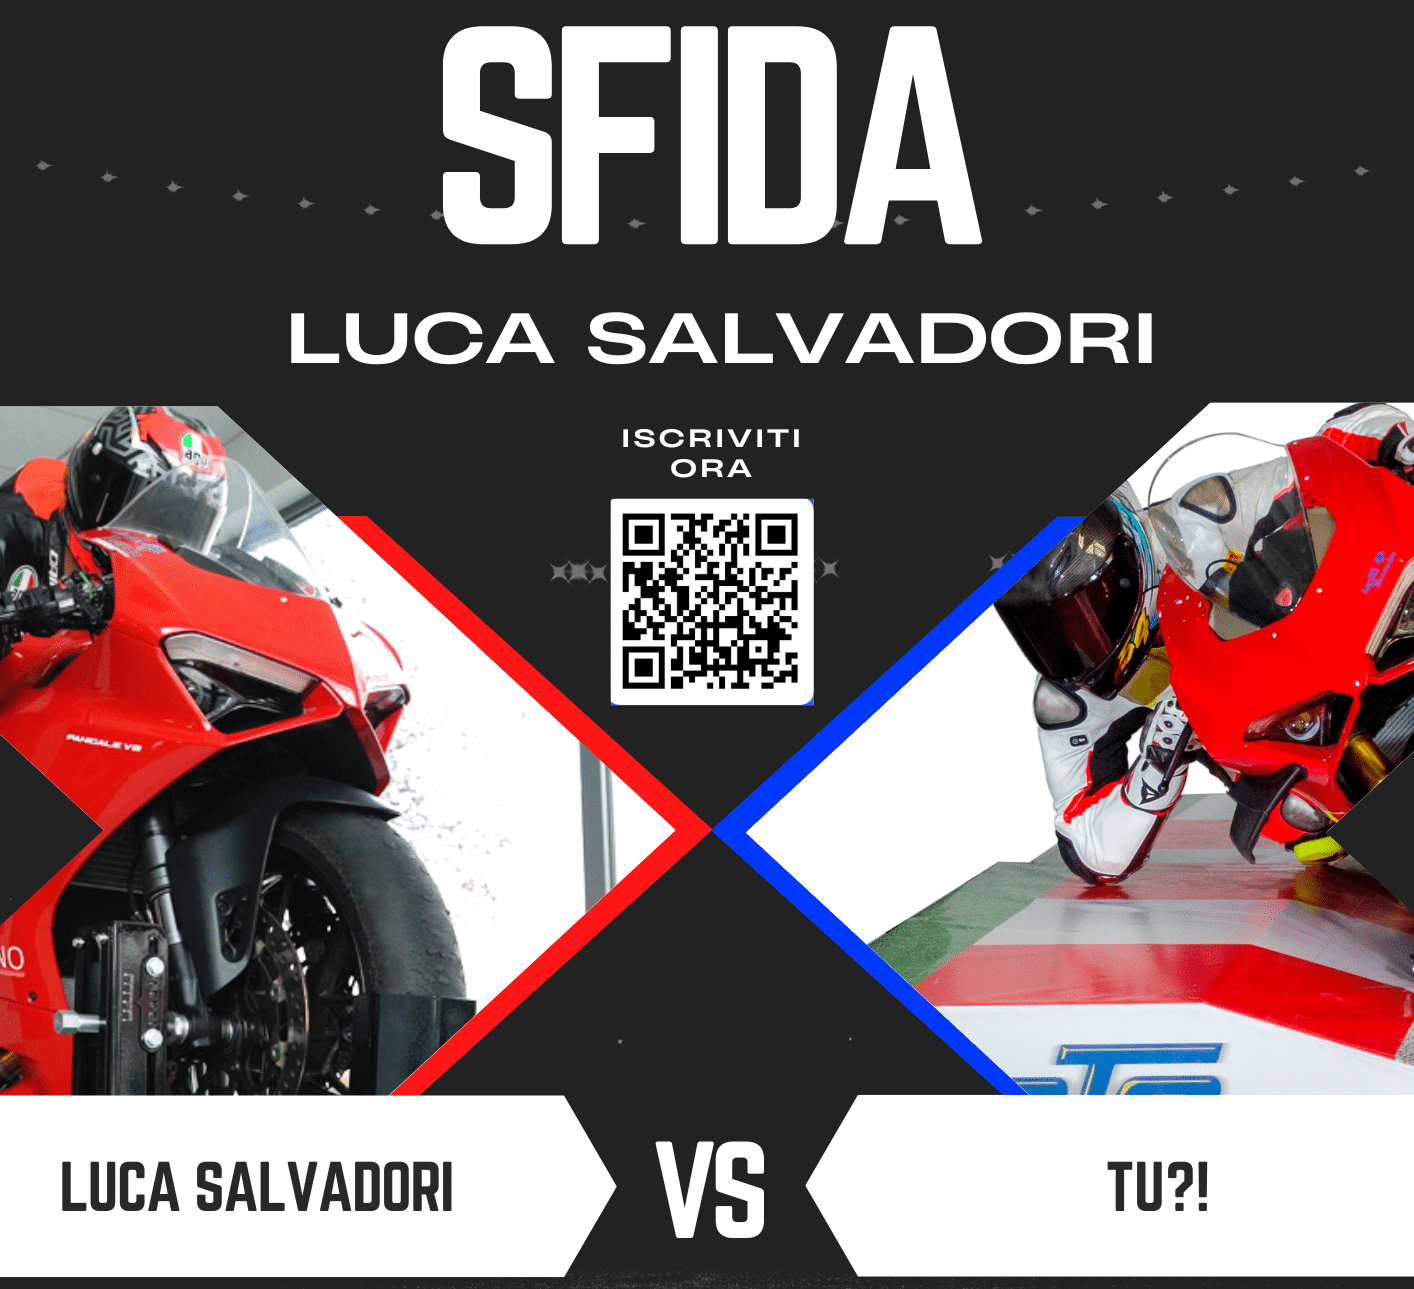 sfida Luca Salvadori, contest, mototrainer, simulatore moto, motorcycle simulator, motorsport, italia